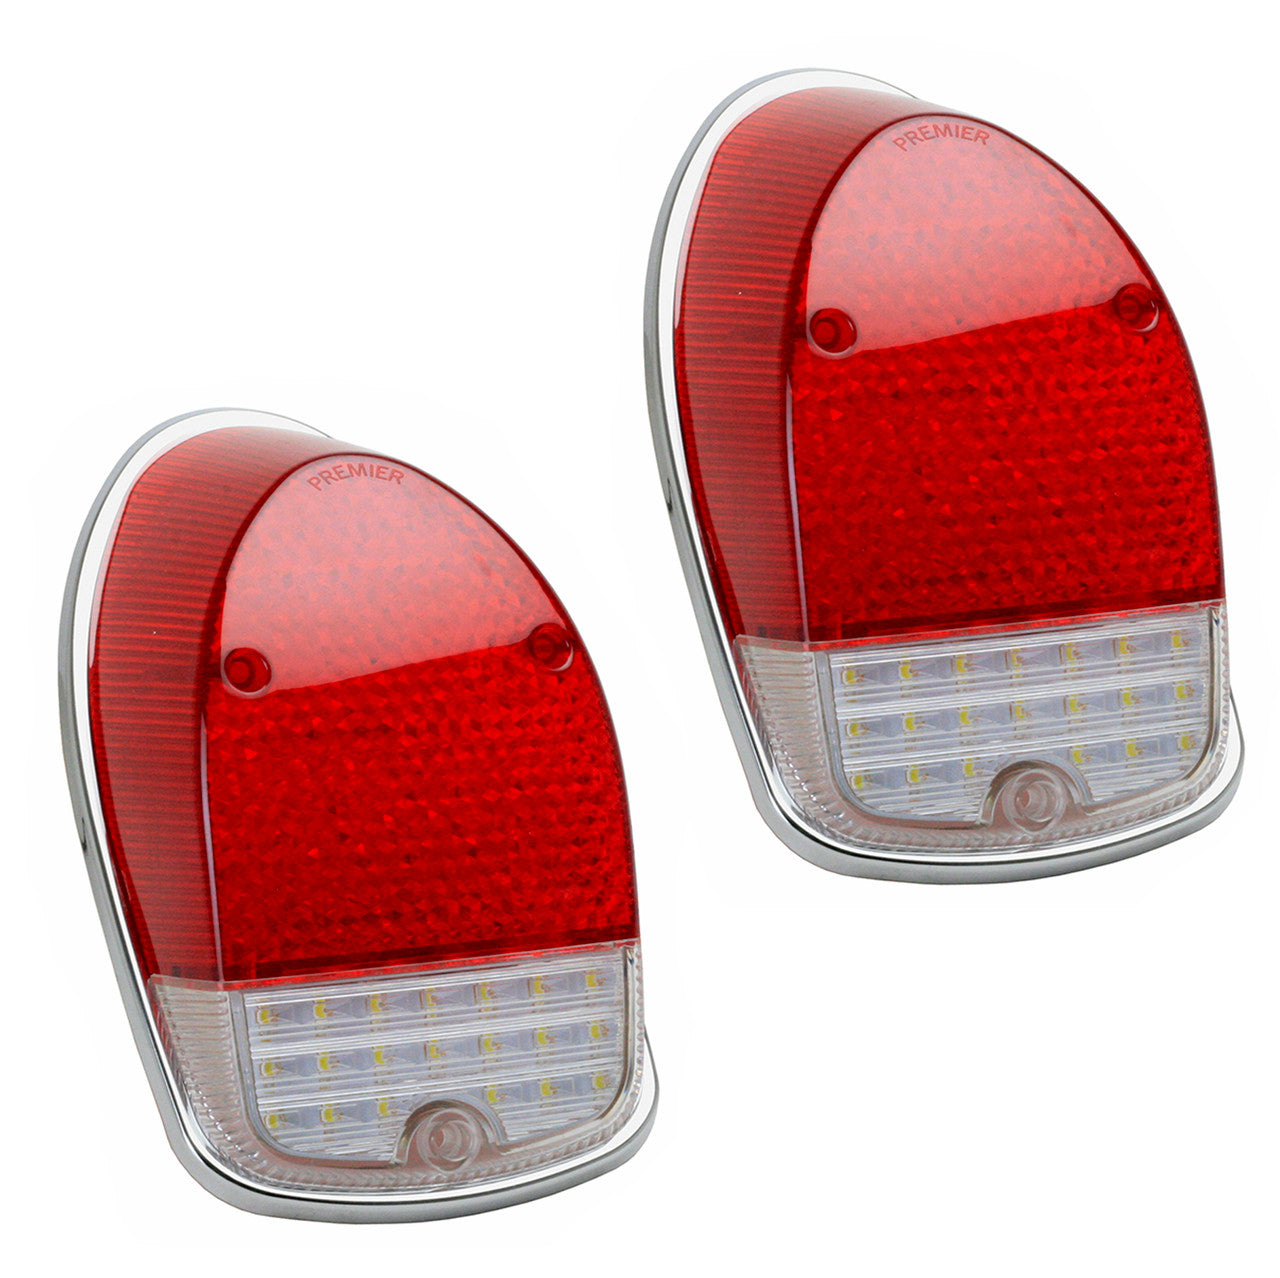 LED Tail Light Lens For Vw Bug 1968-1970, Left & Right - Pair